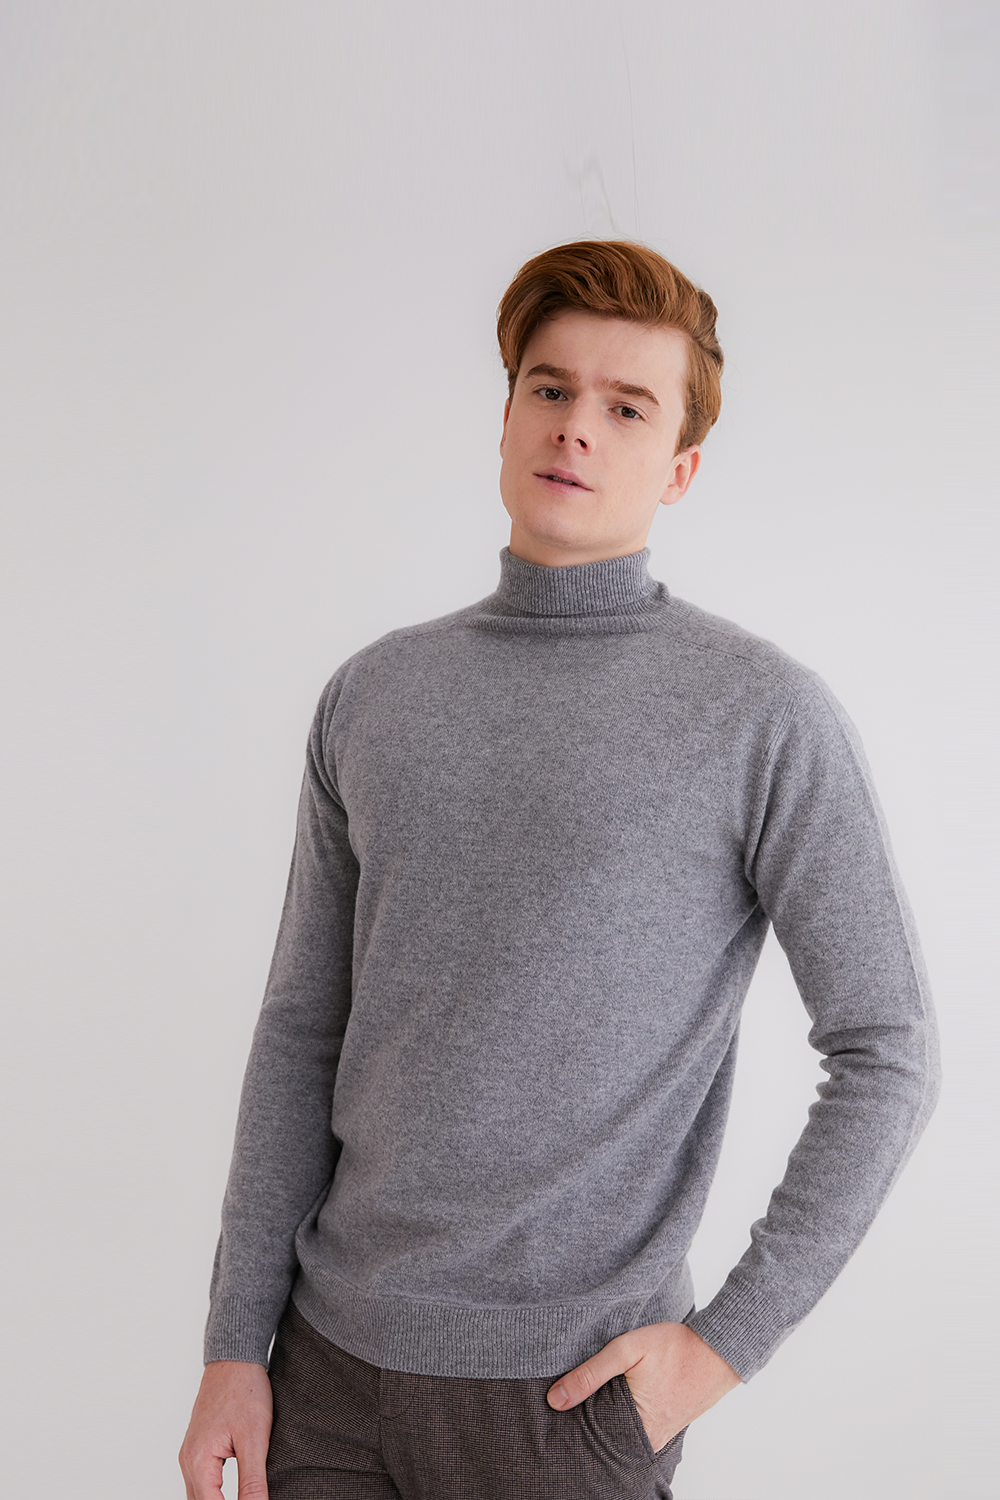 프리미엄 캐시미어 100 남성 스웨터 [Pure cashmere100 turtleneck sweater by whole-garment knitting - Light gray]